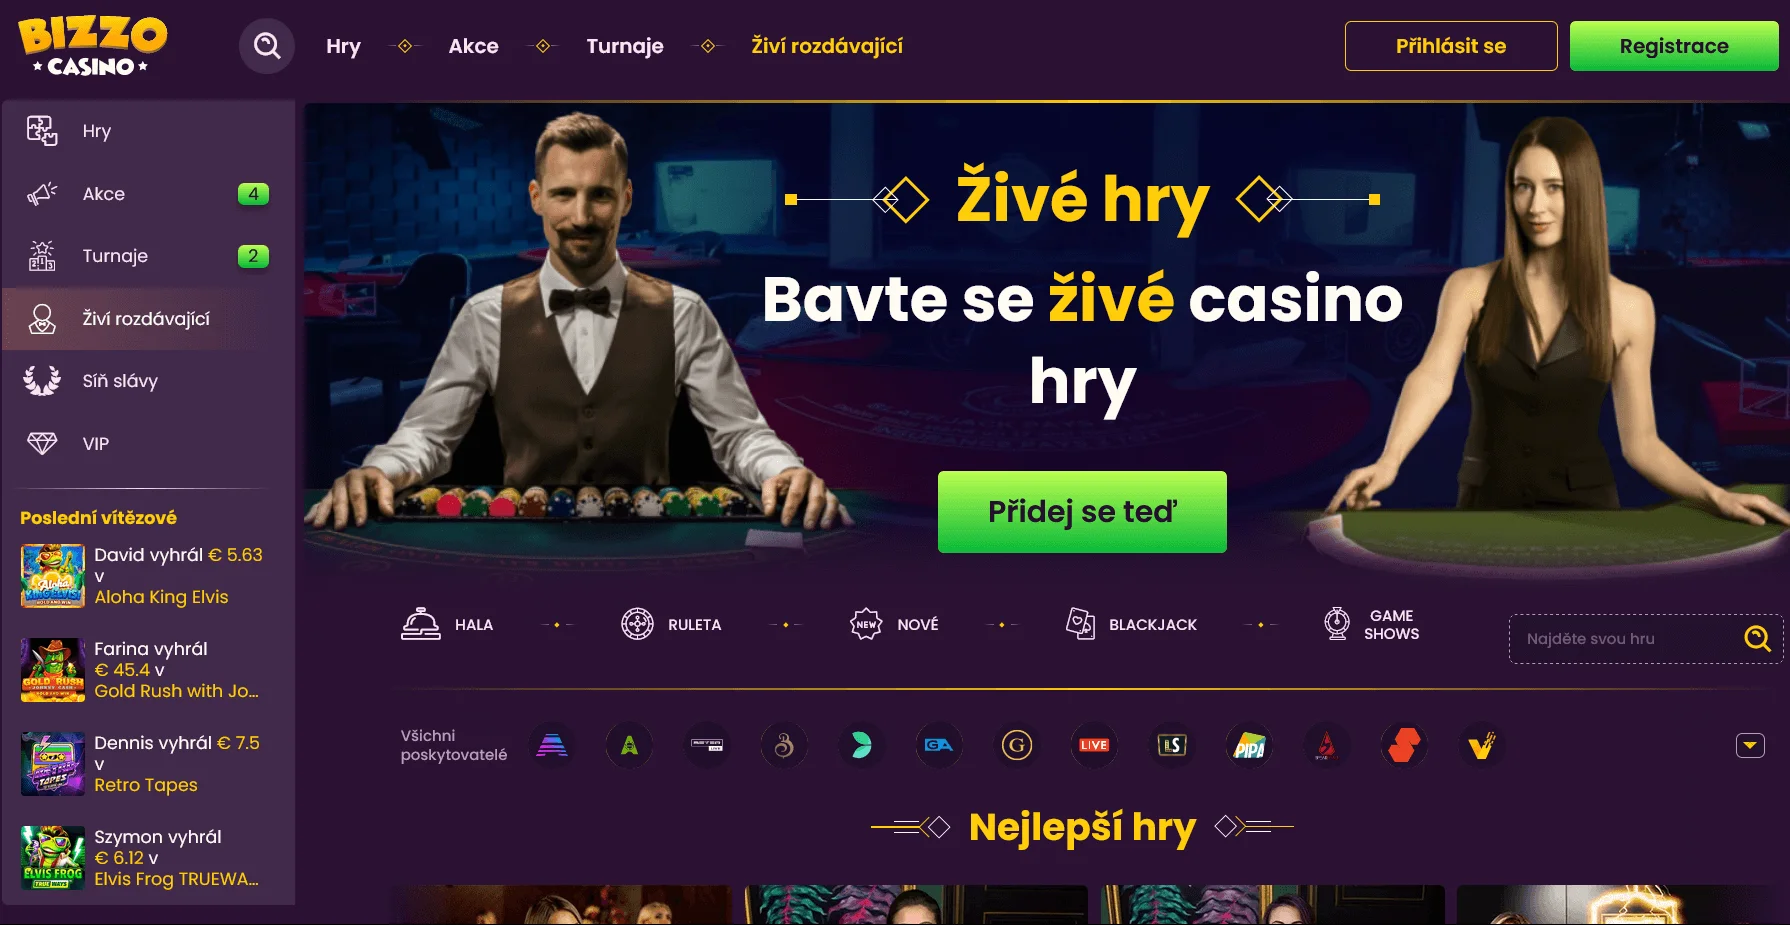 Registrace Bizzo Casino